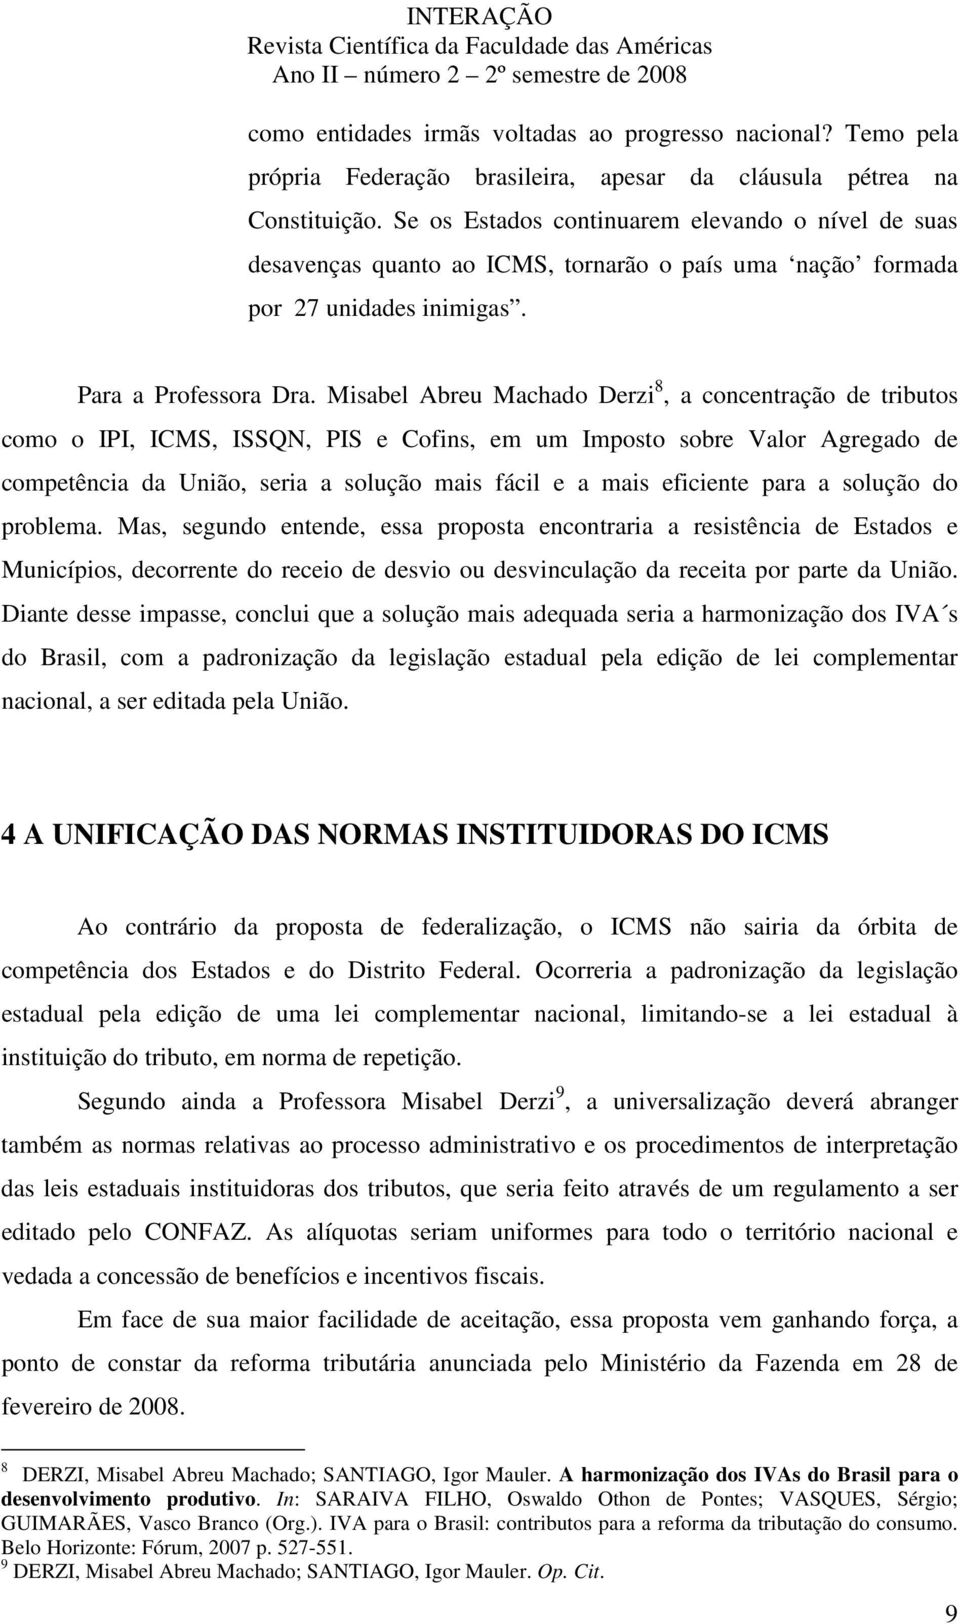 Misabel Abreu Machado Derzi 8, a concentração de tributos como o IPI, ICMS, ISSQN, PIS e Cofins, em um Imposto sobre Valor Agregado de competência da União, seria a solução mais fácil e a mais